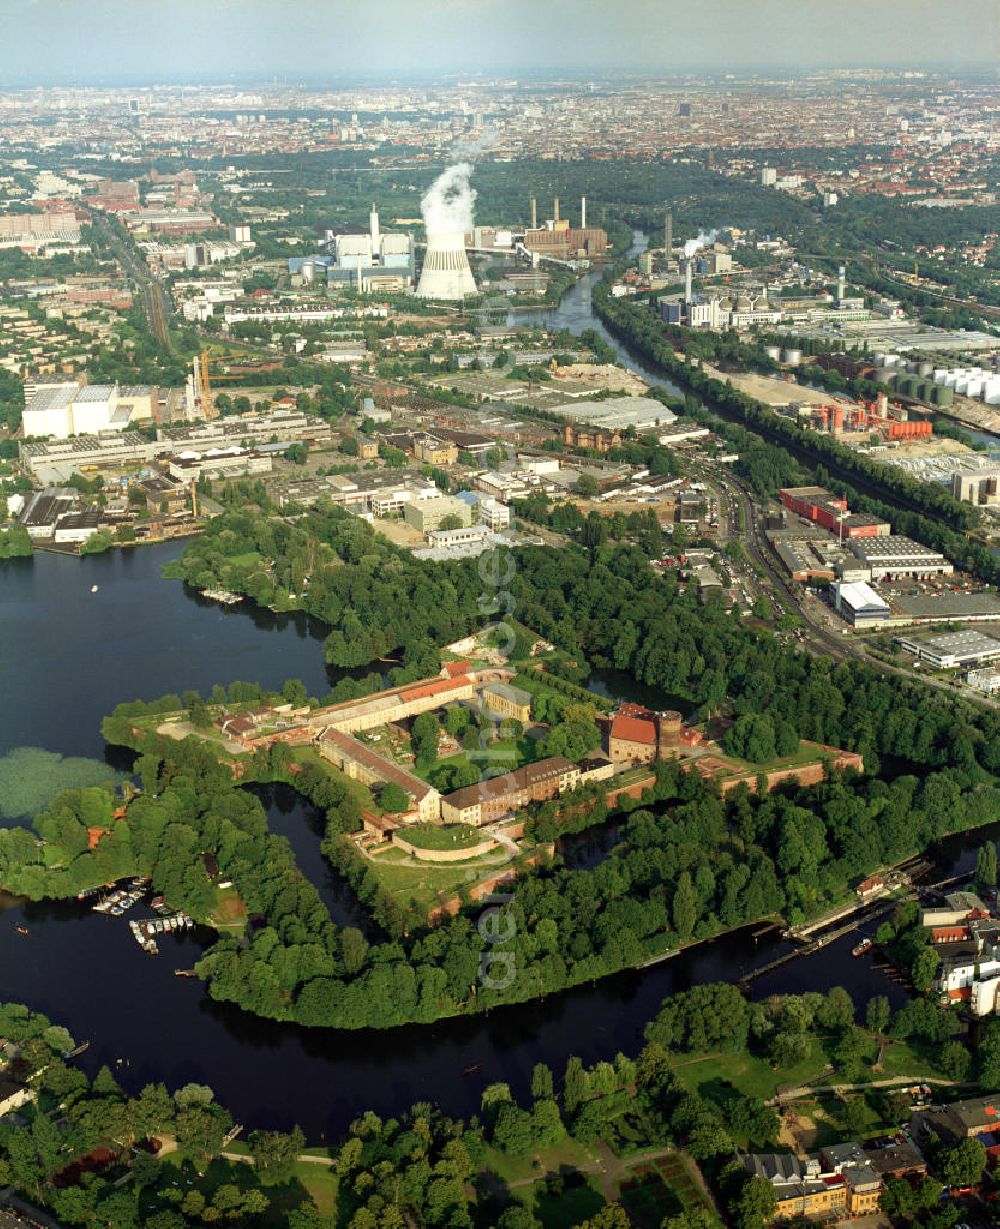 Aerial image Berlin - Blick auf die Zitadelle Spandau im berliner Ortsteil Haselhorst, Bezirk Spandau. Sie ist eine der bedeutendsten und besterhaltenen Renaissance-Festungen Europas.